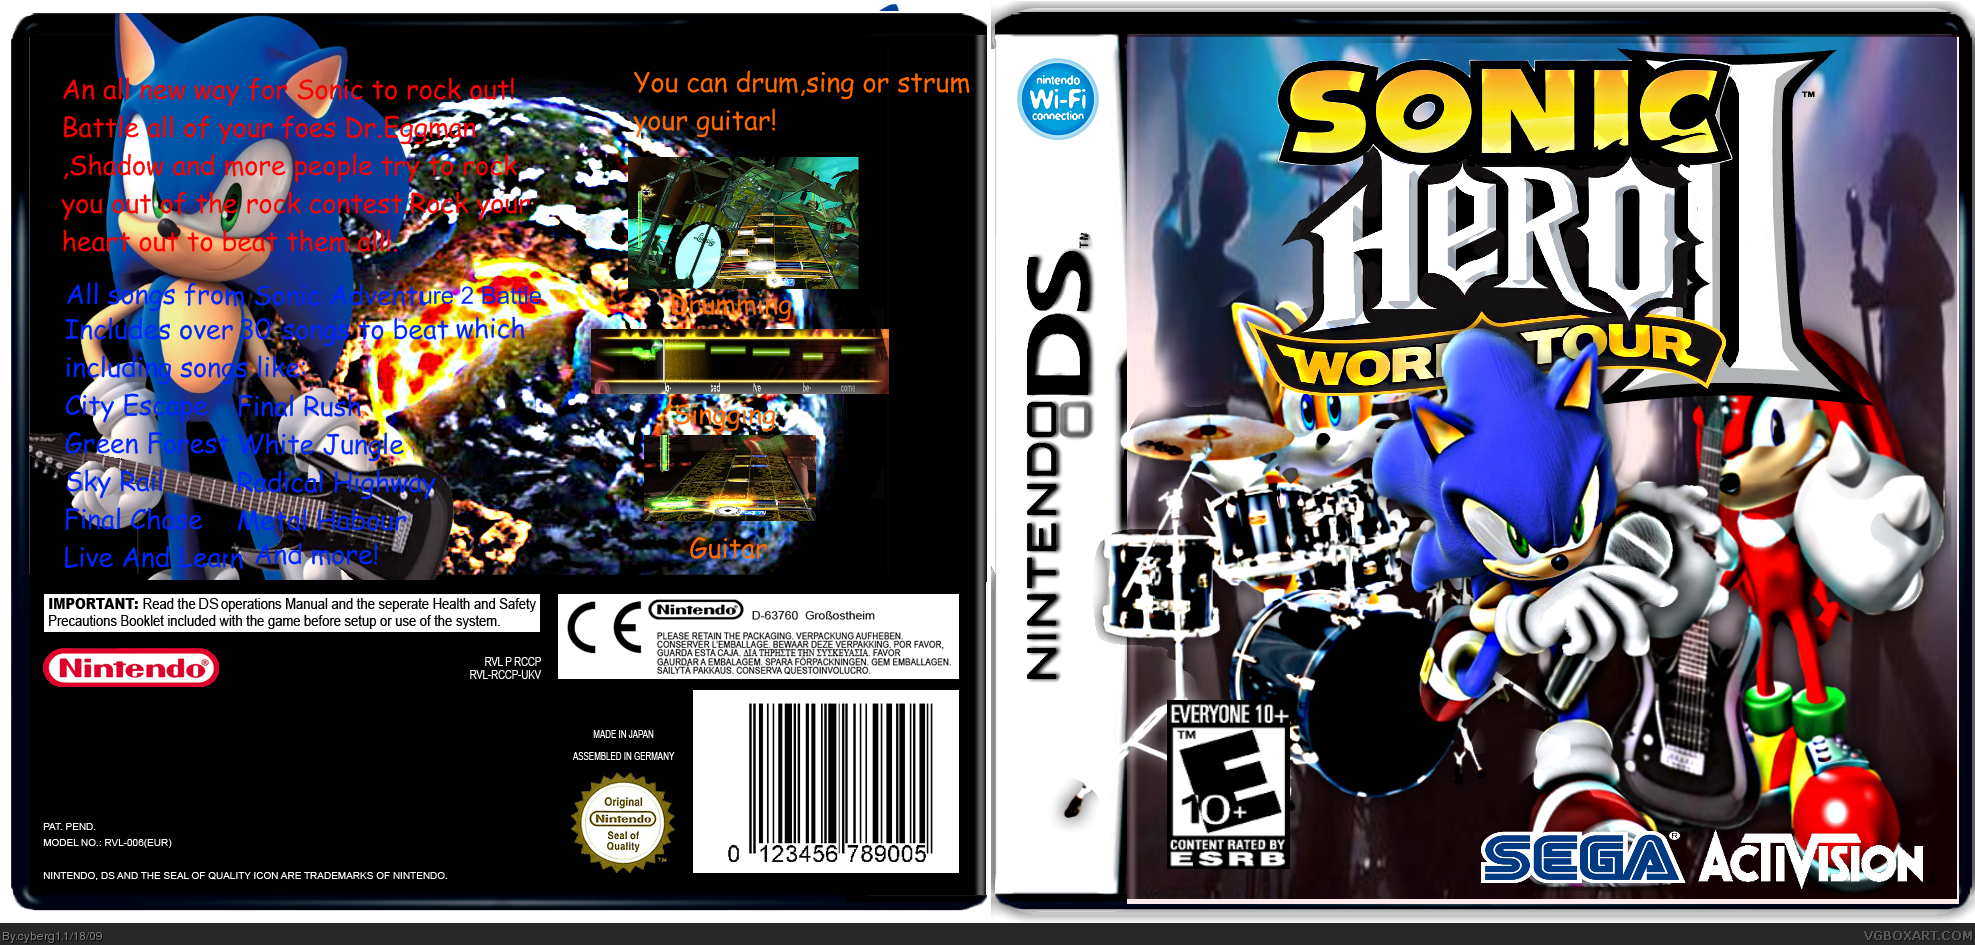 Sonic Hero World Tour 2 box cover